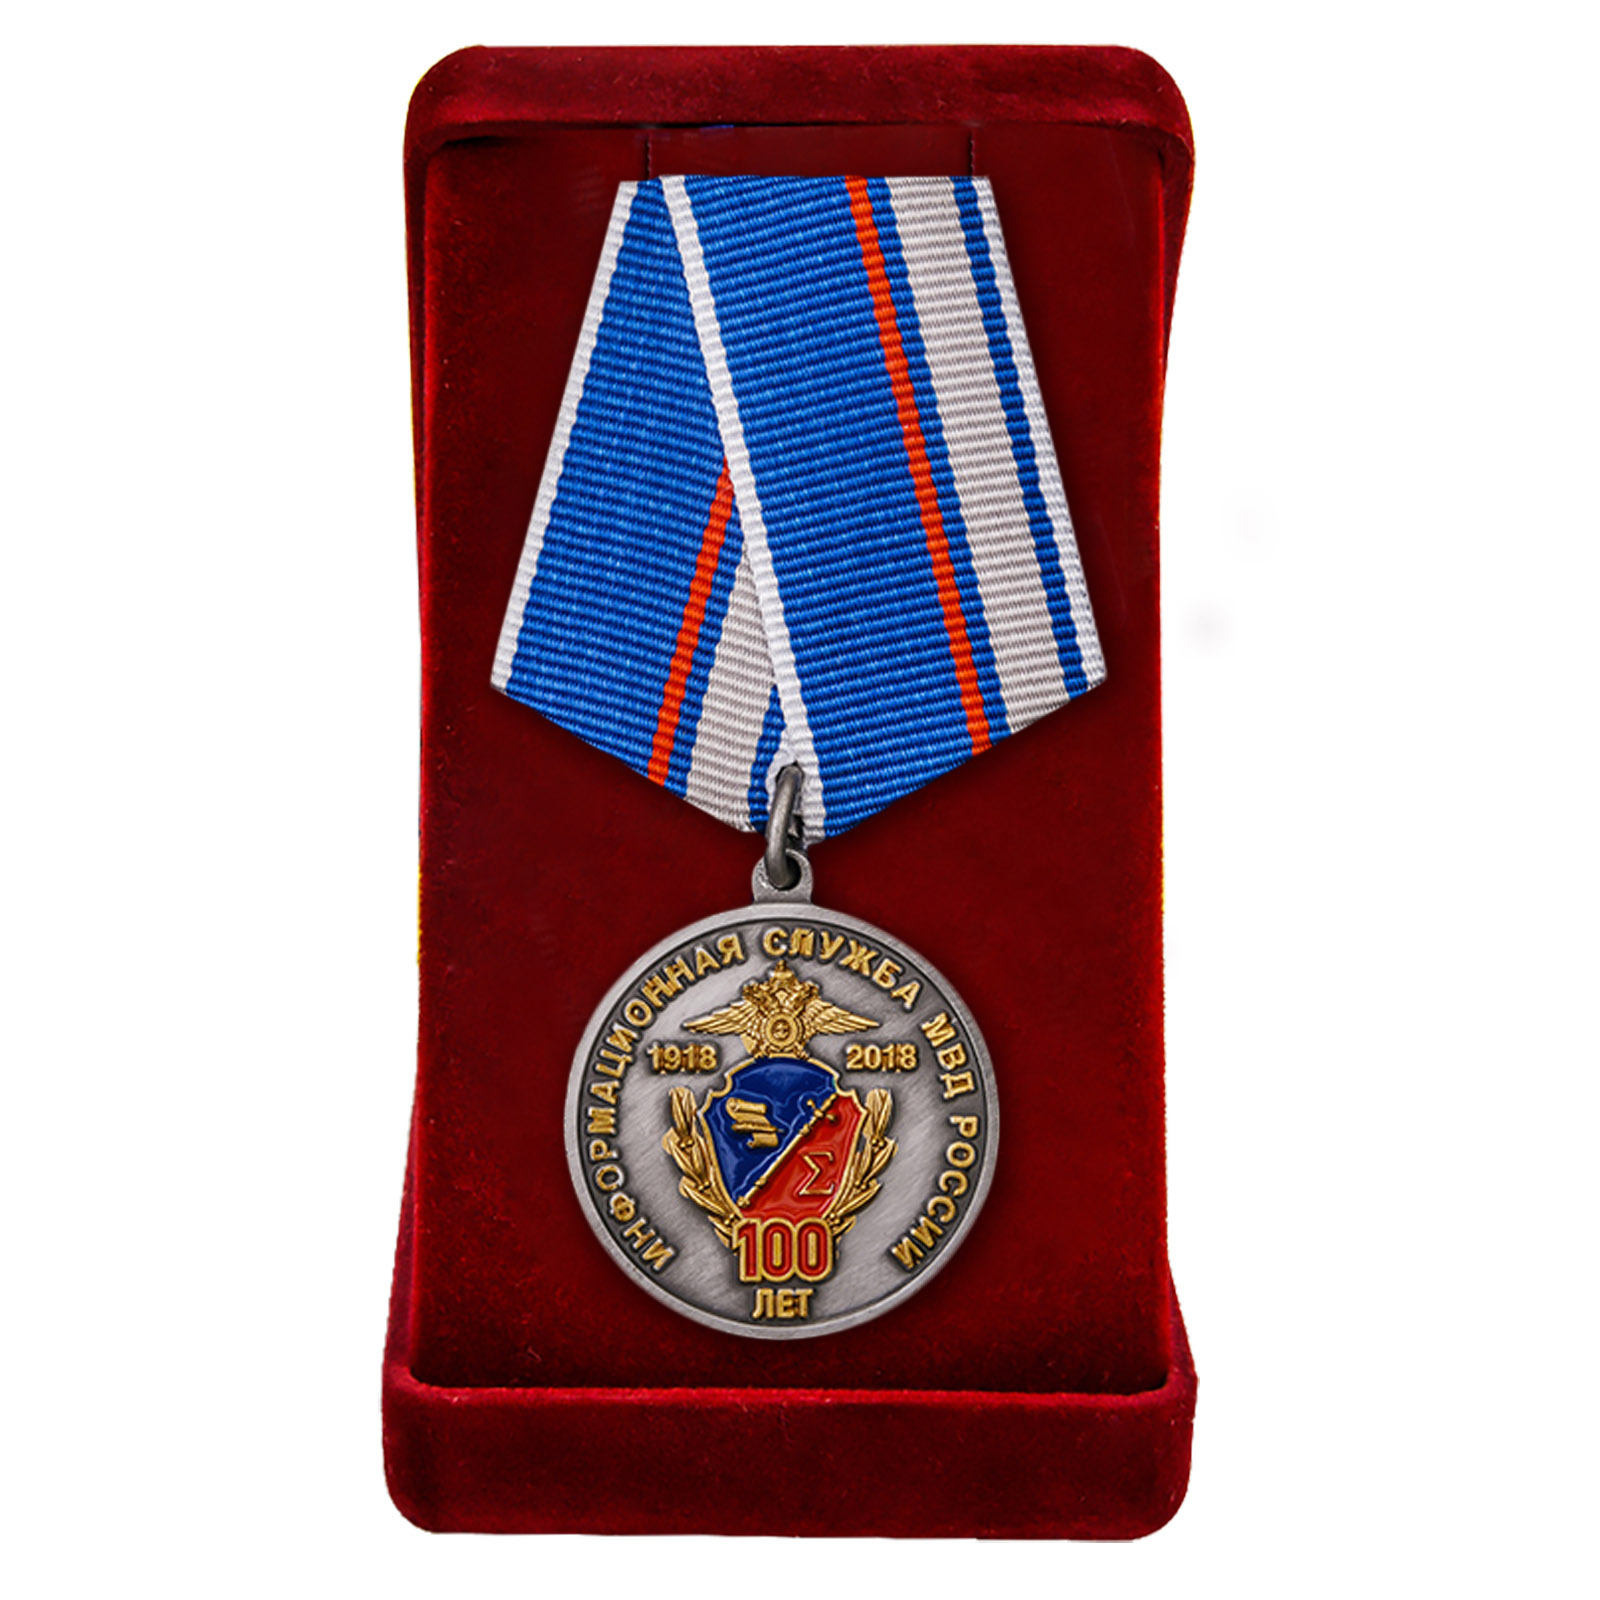 Купить юбилейную медаль 100 лет Информационной службе МВД России в подарок